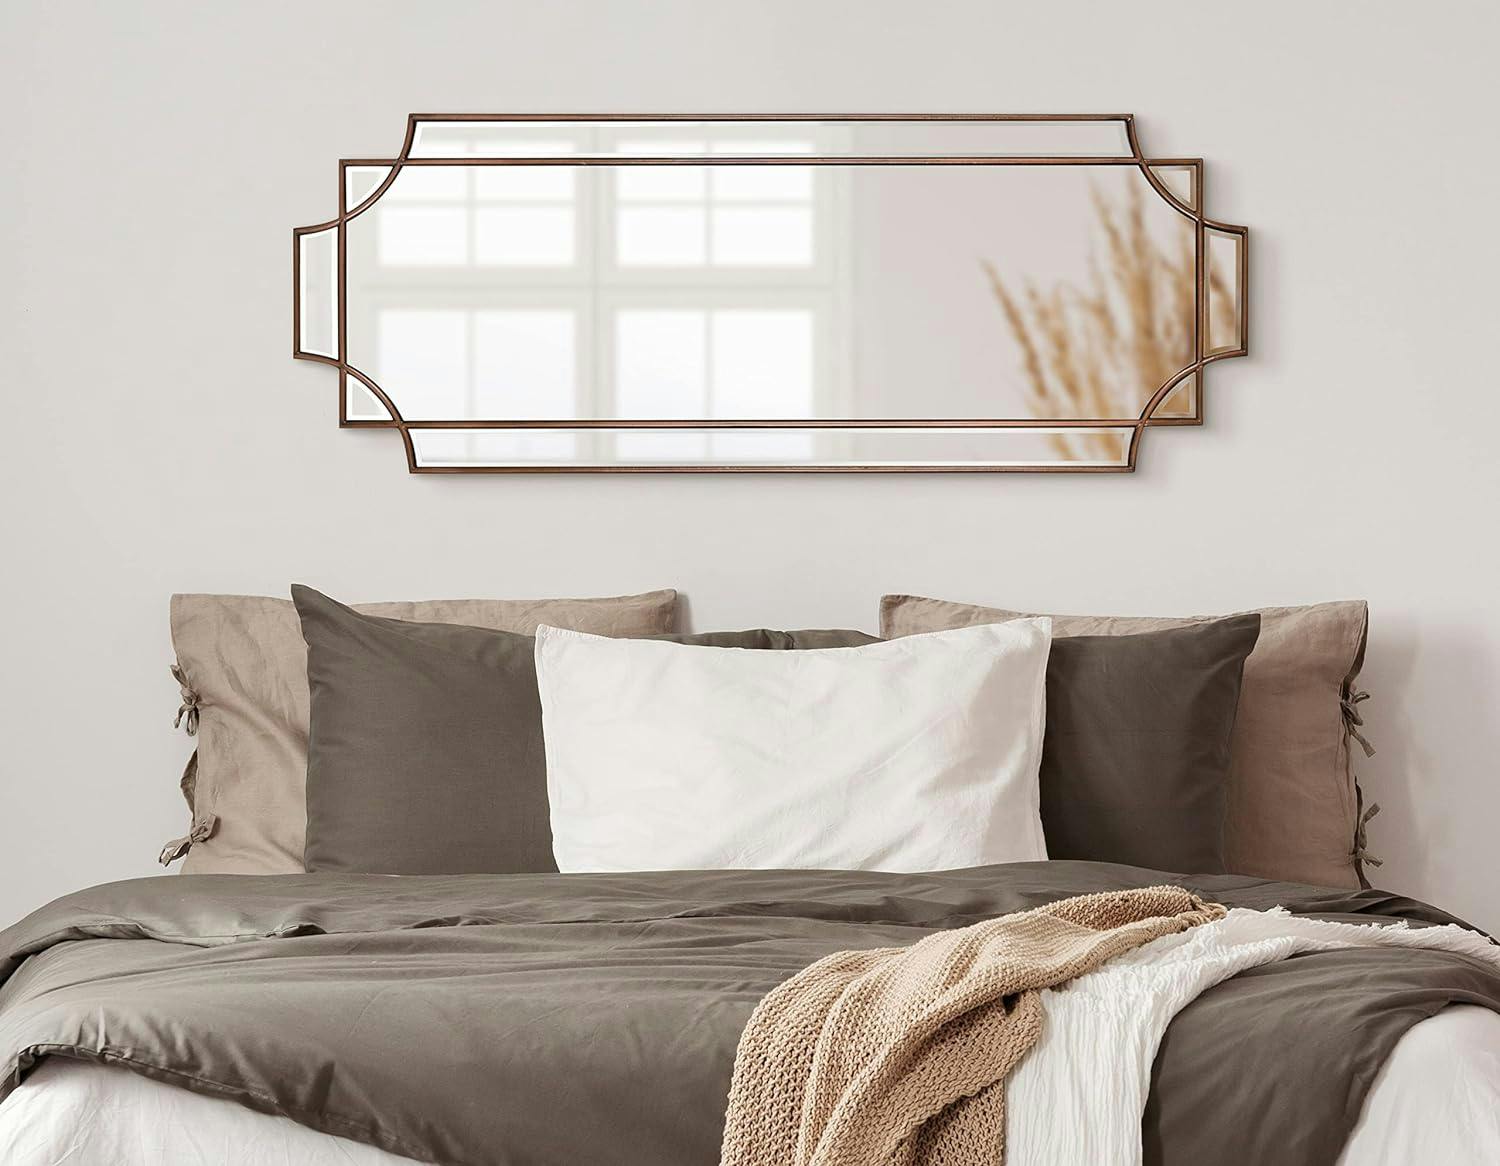 Elegant Minuette Full-Length 16x42 Bronze Wood Framed Mirror